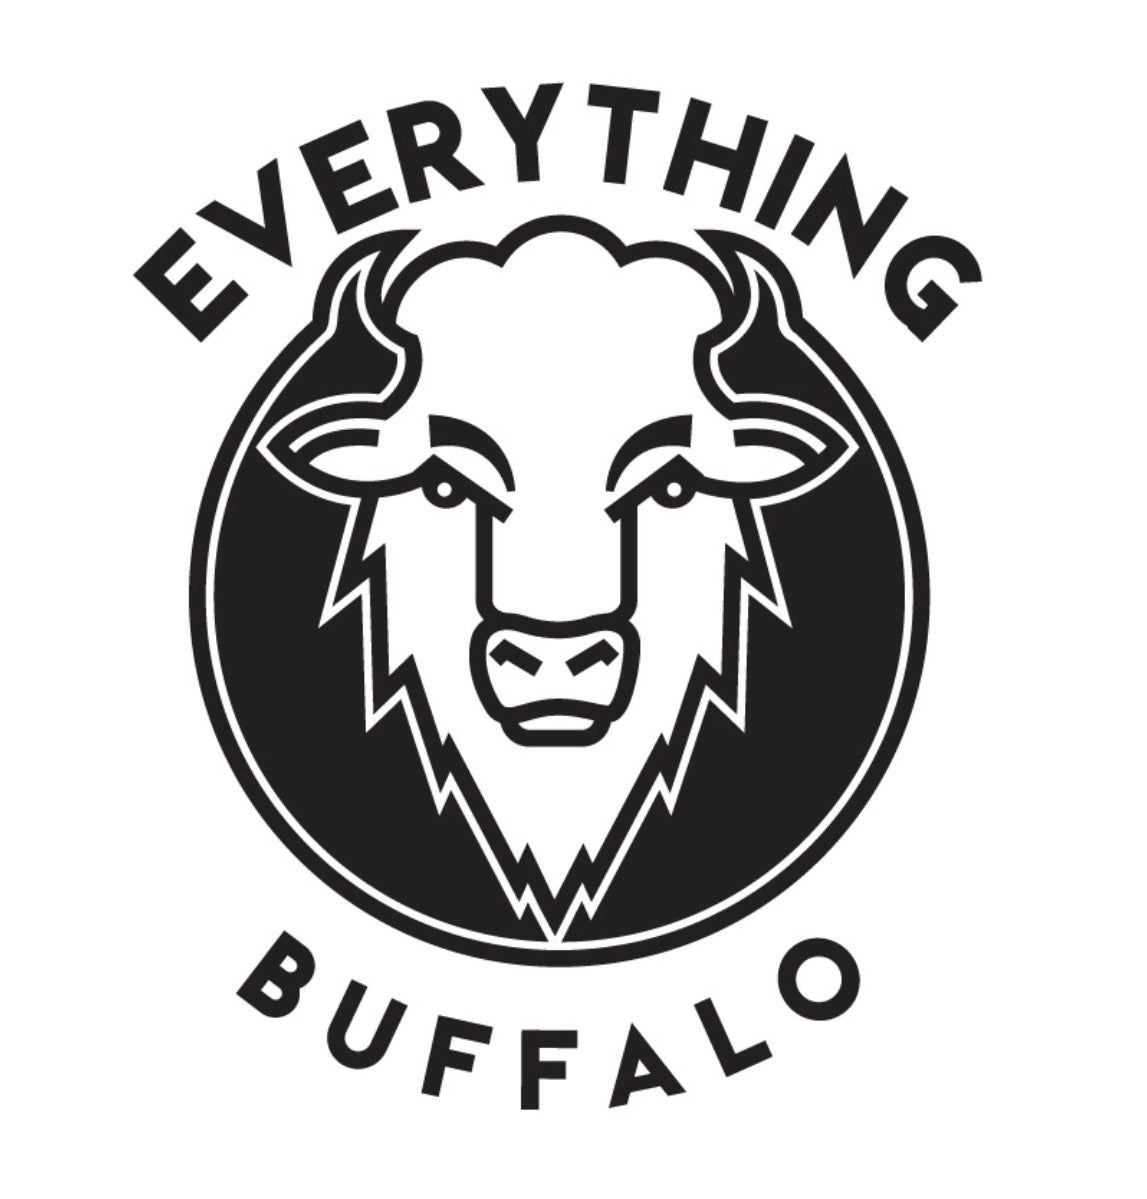 Allen Everything Bag – Buffalo Baby